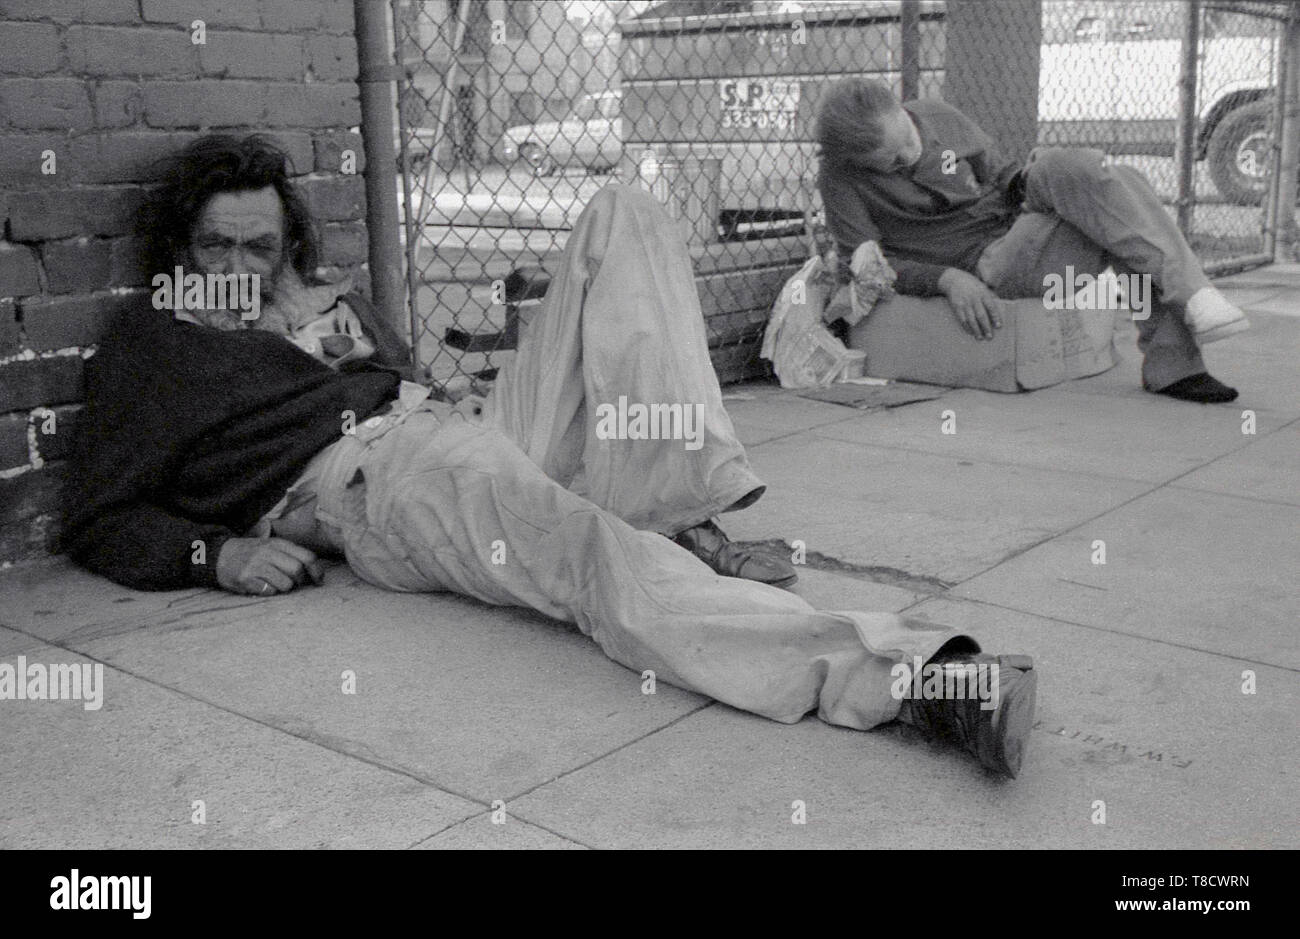 1970er Jahre, USA, Los Angeles, Straße, Menschen, zwei obdachlose Männer liegen auf dem Bürgersteig, man saß auf einem Karton. Teile von LA als "Pappe Stadt bekannt" sind Zeugnis einer großen Anzahl von hoffnungslosen obdachlosen Menschen, die eine Hand in den Mund leben auf der Straße. Stockfoto